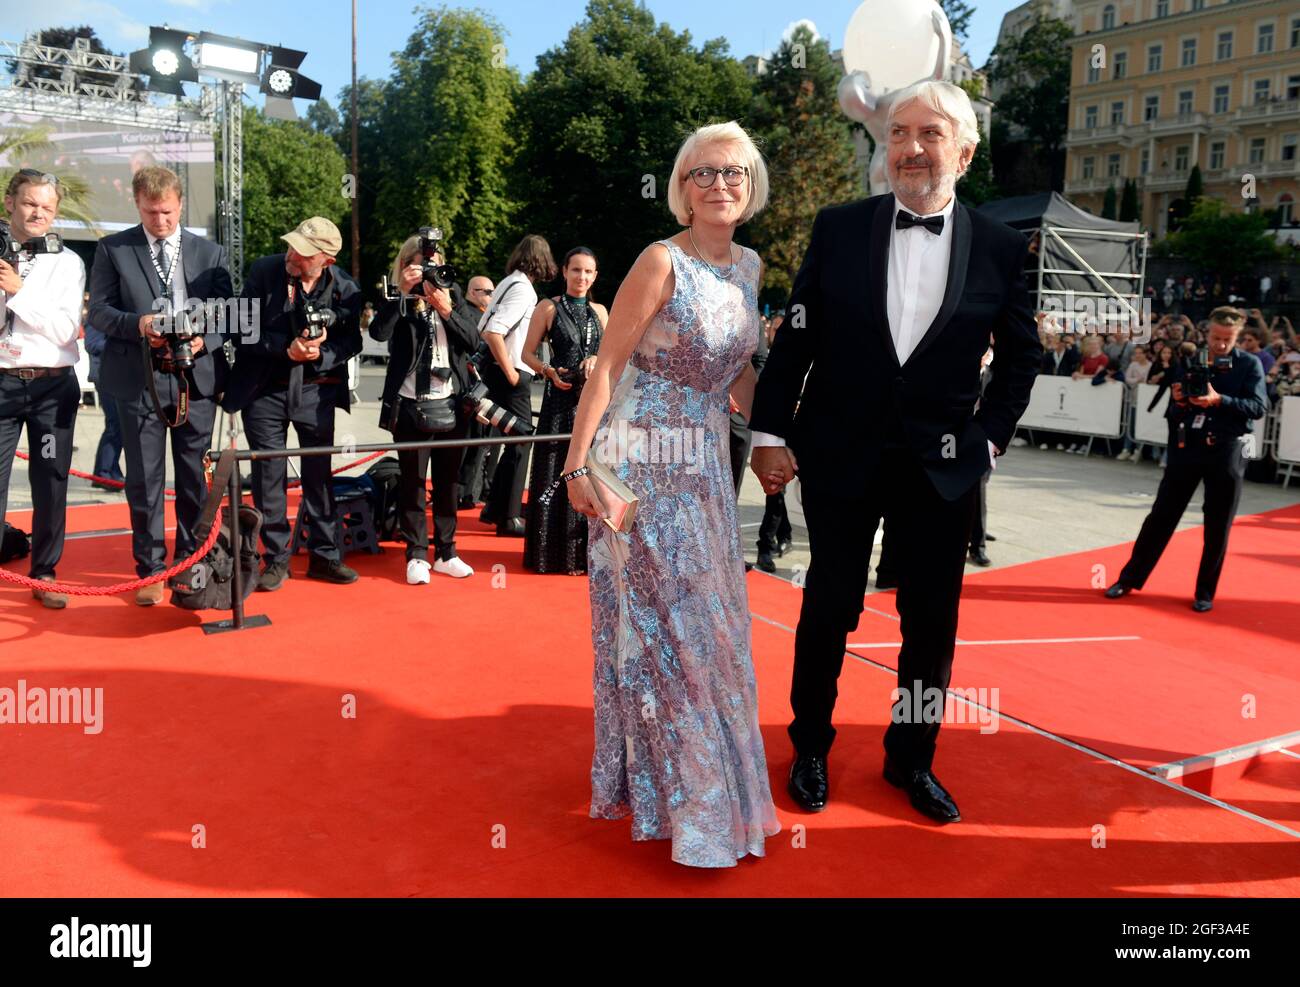 L'acteur Miroslav Donutil et sa femme Zuzana arrivent au 55e Festival international du film de Karlovy Vary (KVIFF) à Karlovy Vary, République tchèque, en août Banque D'Images